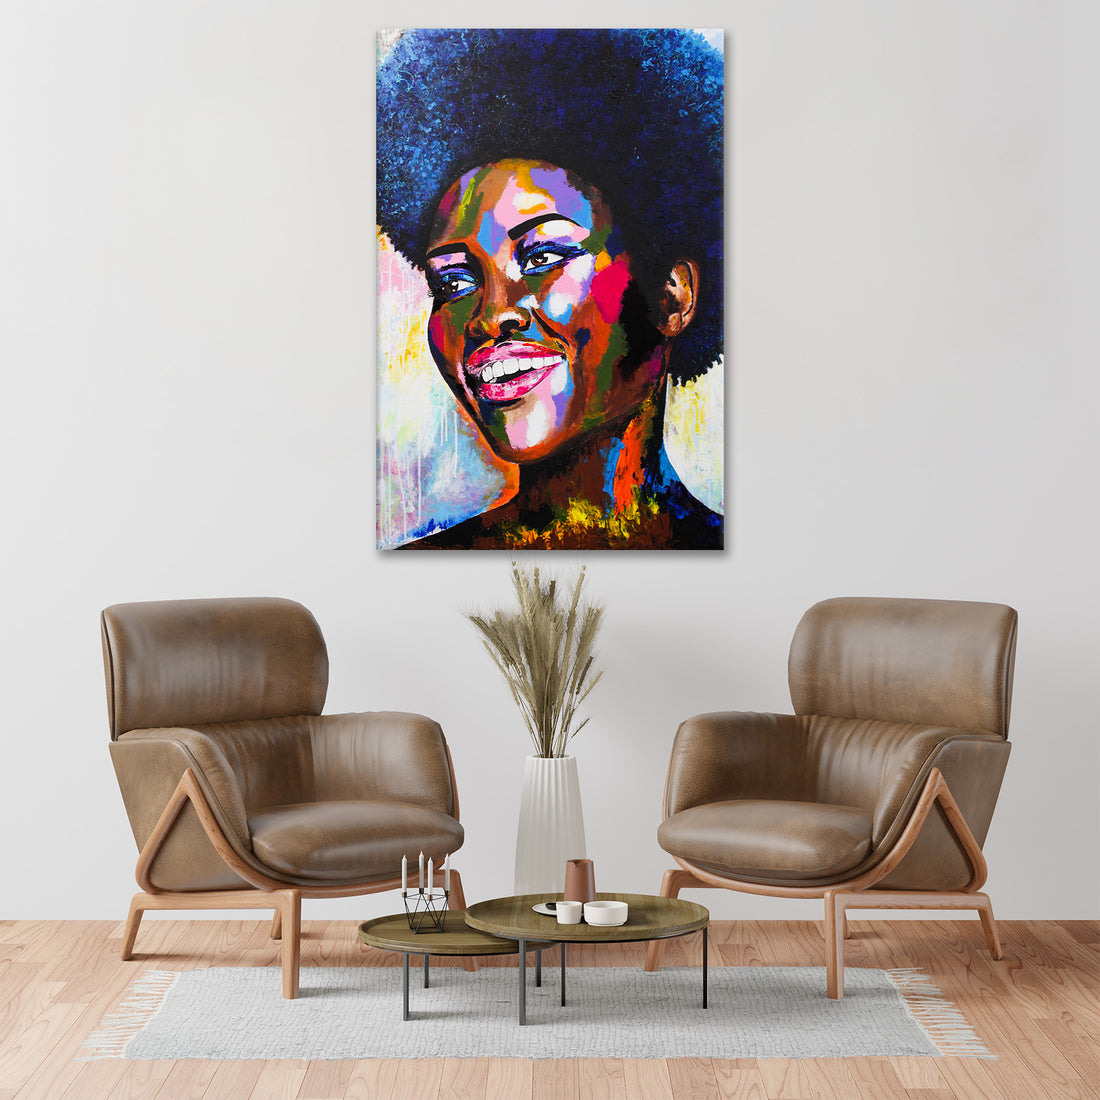 Wandbild afrikanische Frau, Afro-Look Beautiful Smile